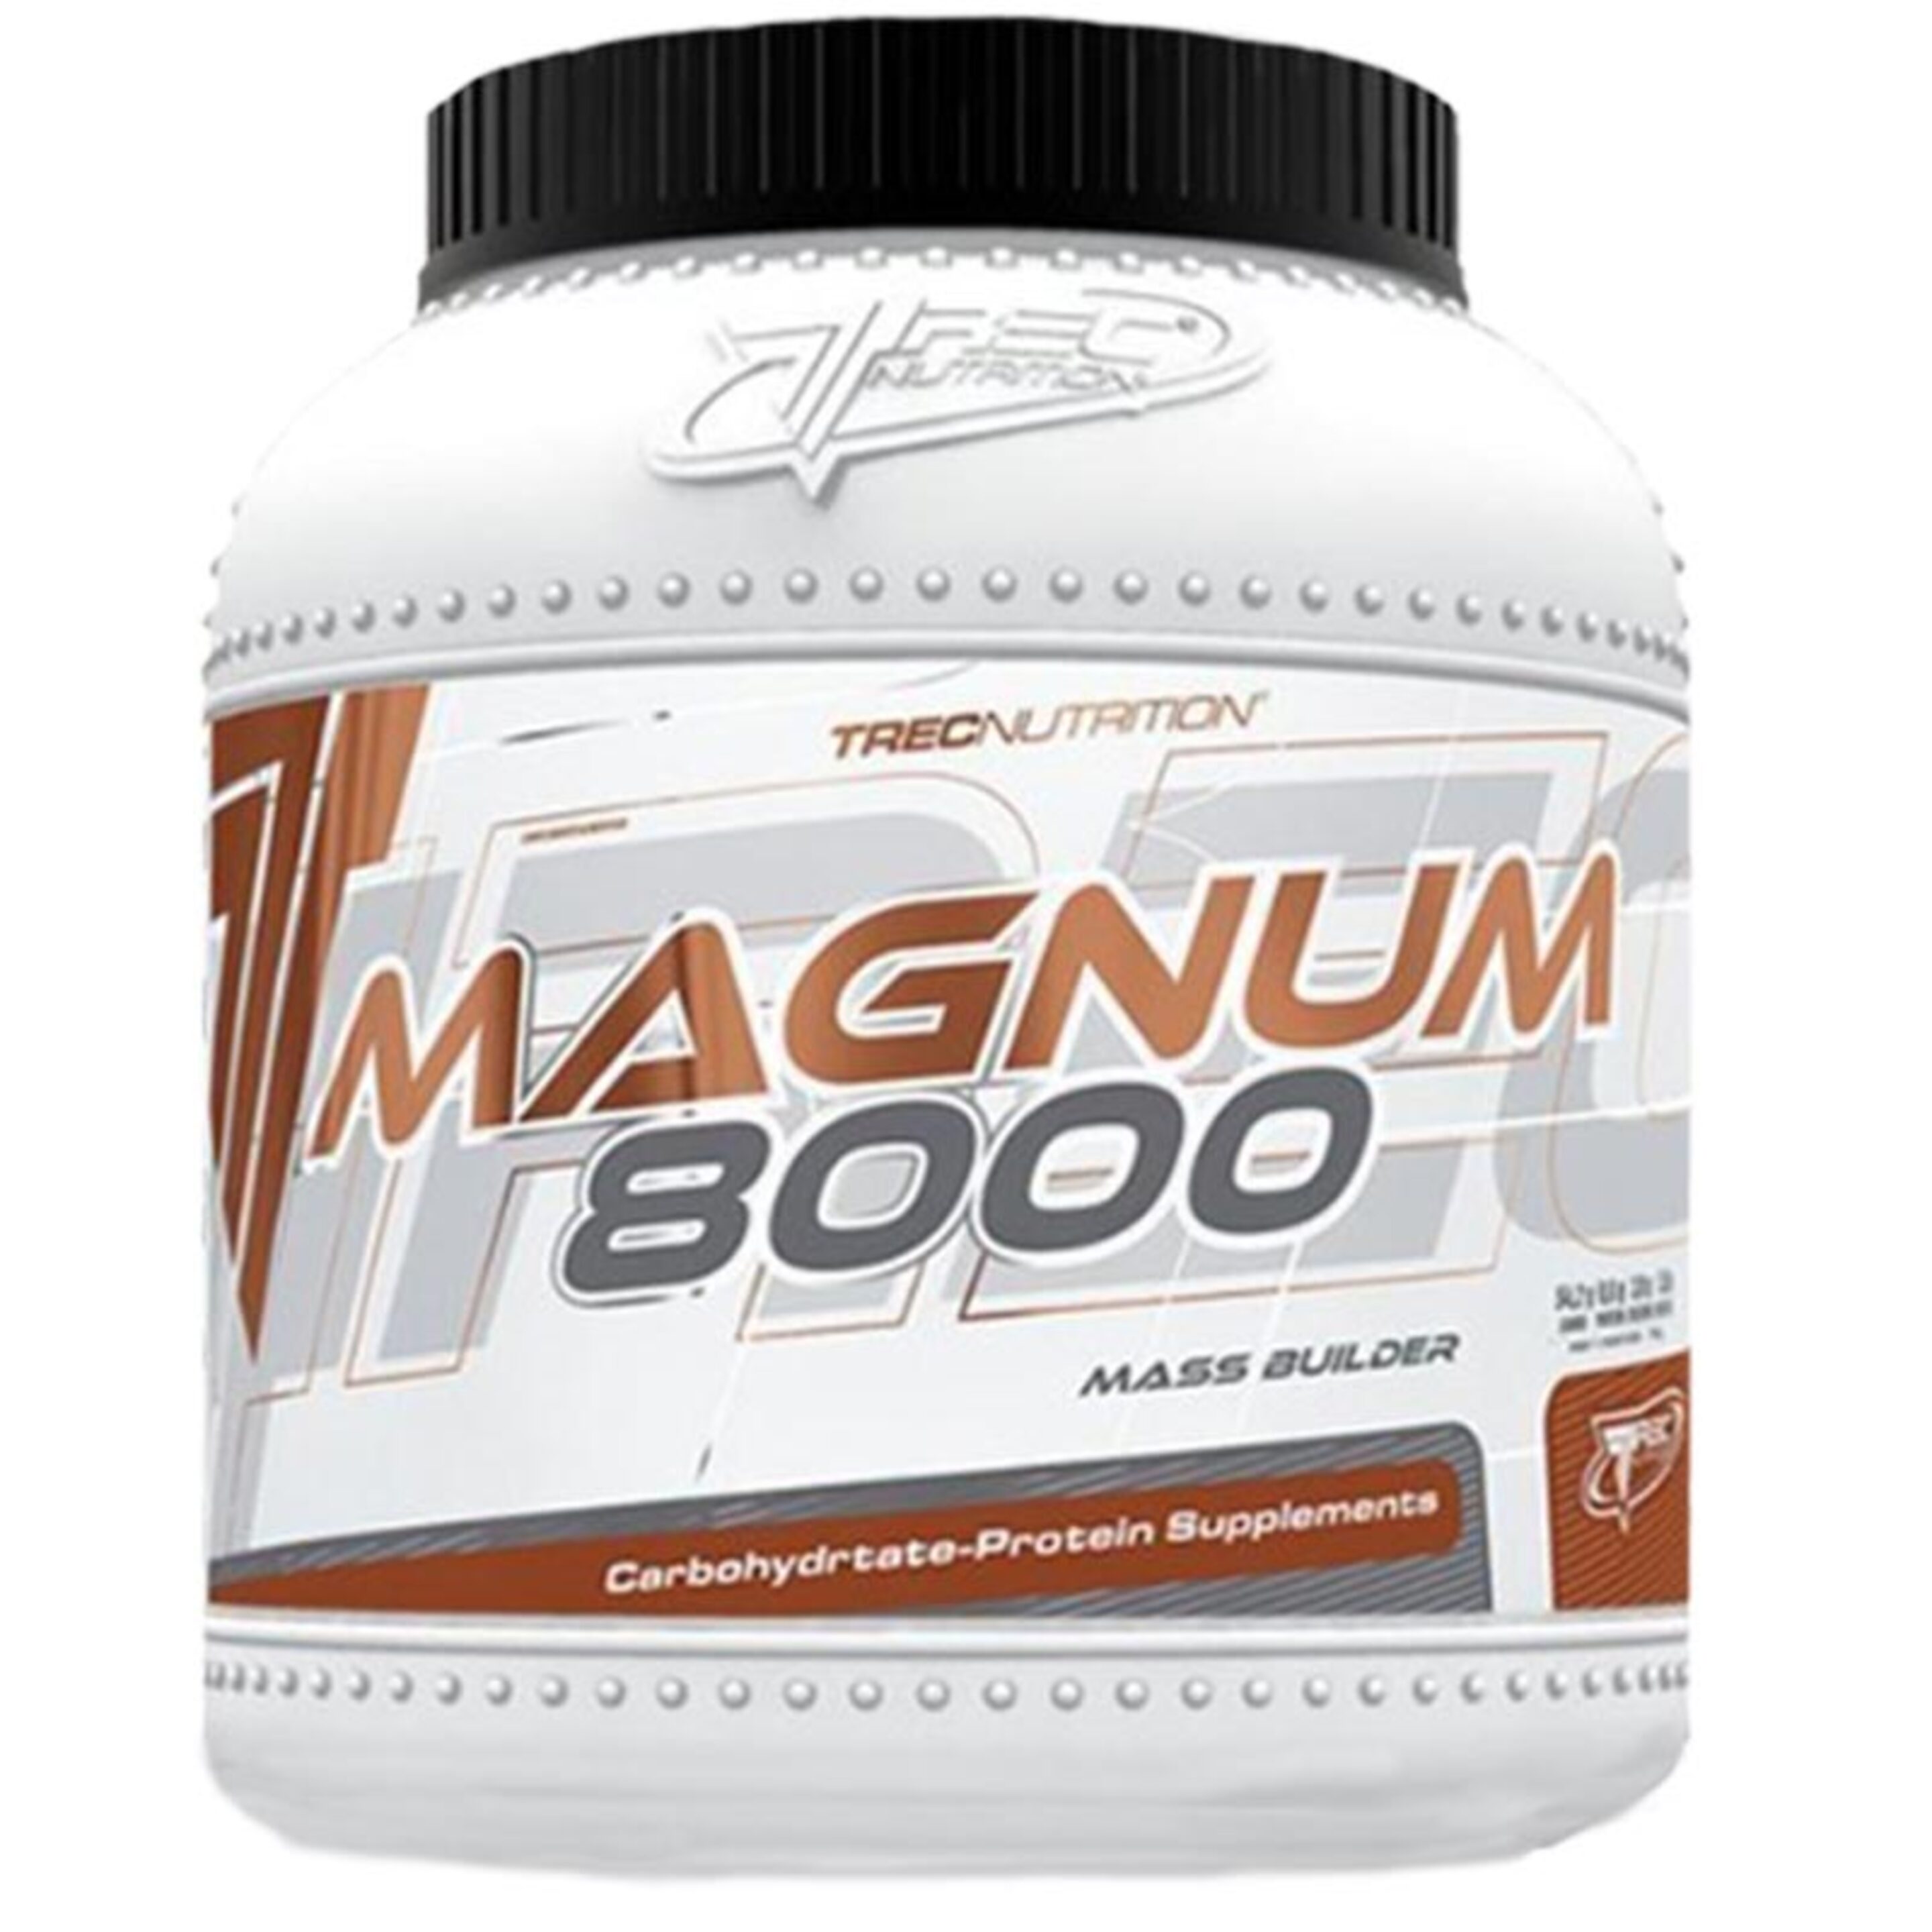 Magnum 8000 - 1600g - Fresa